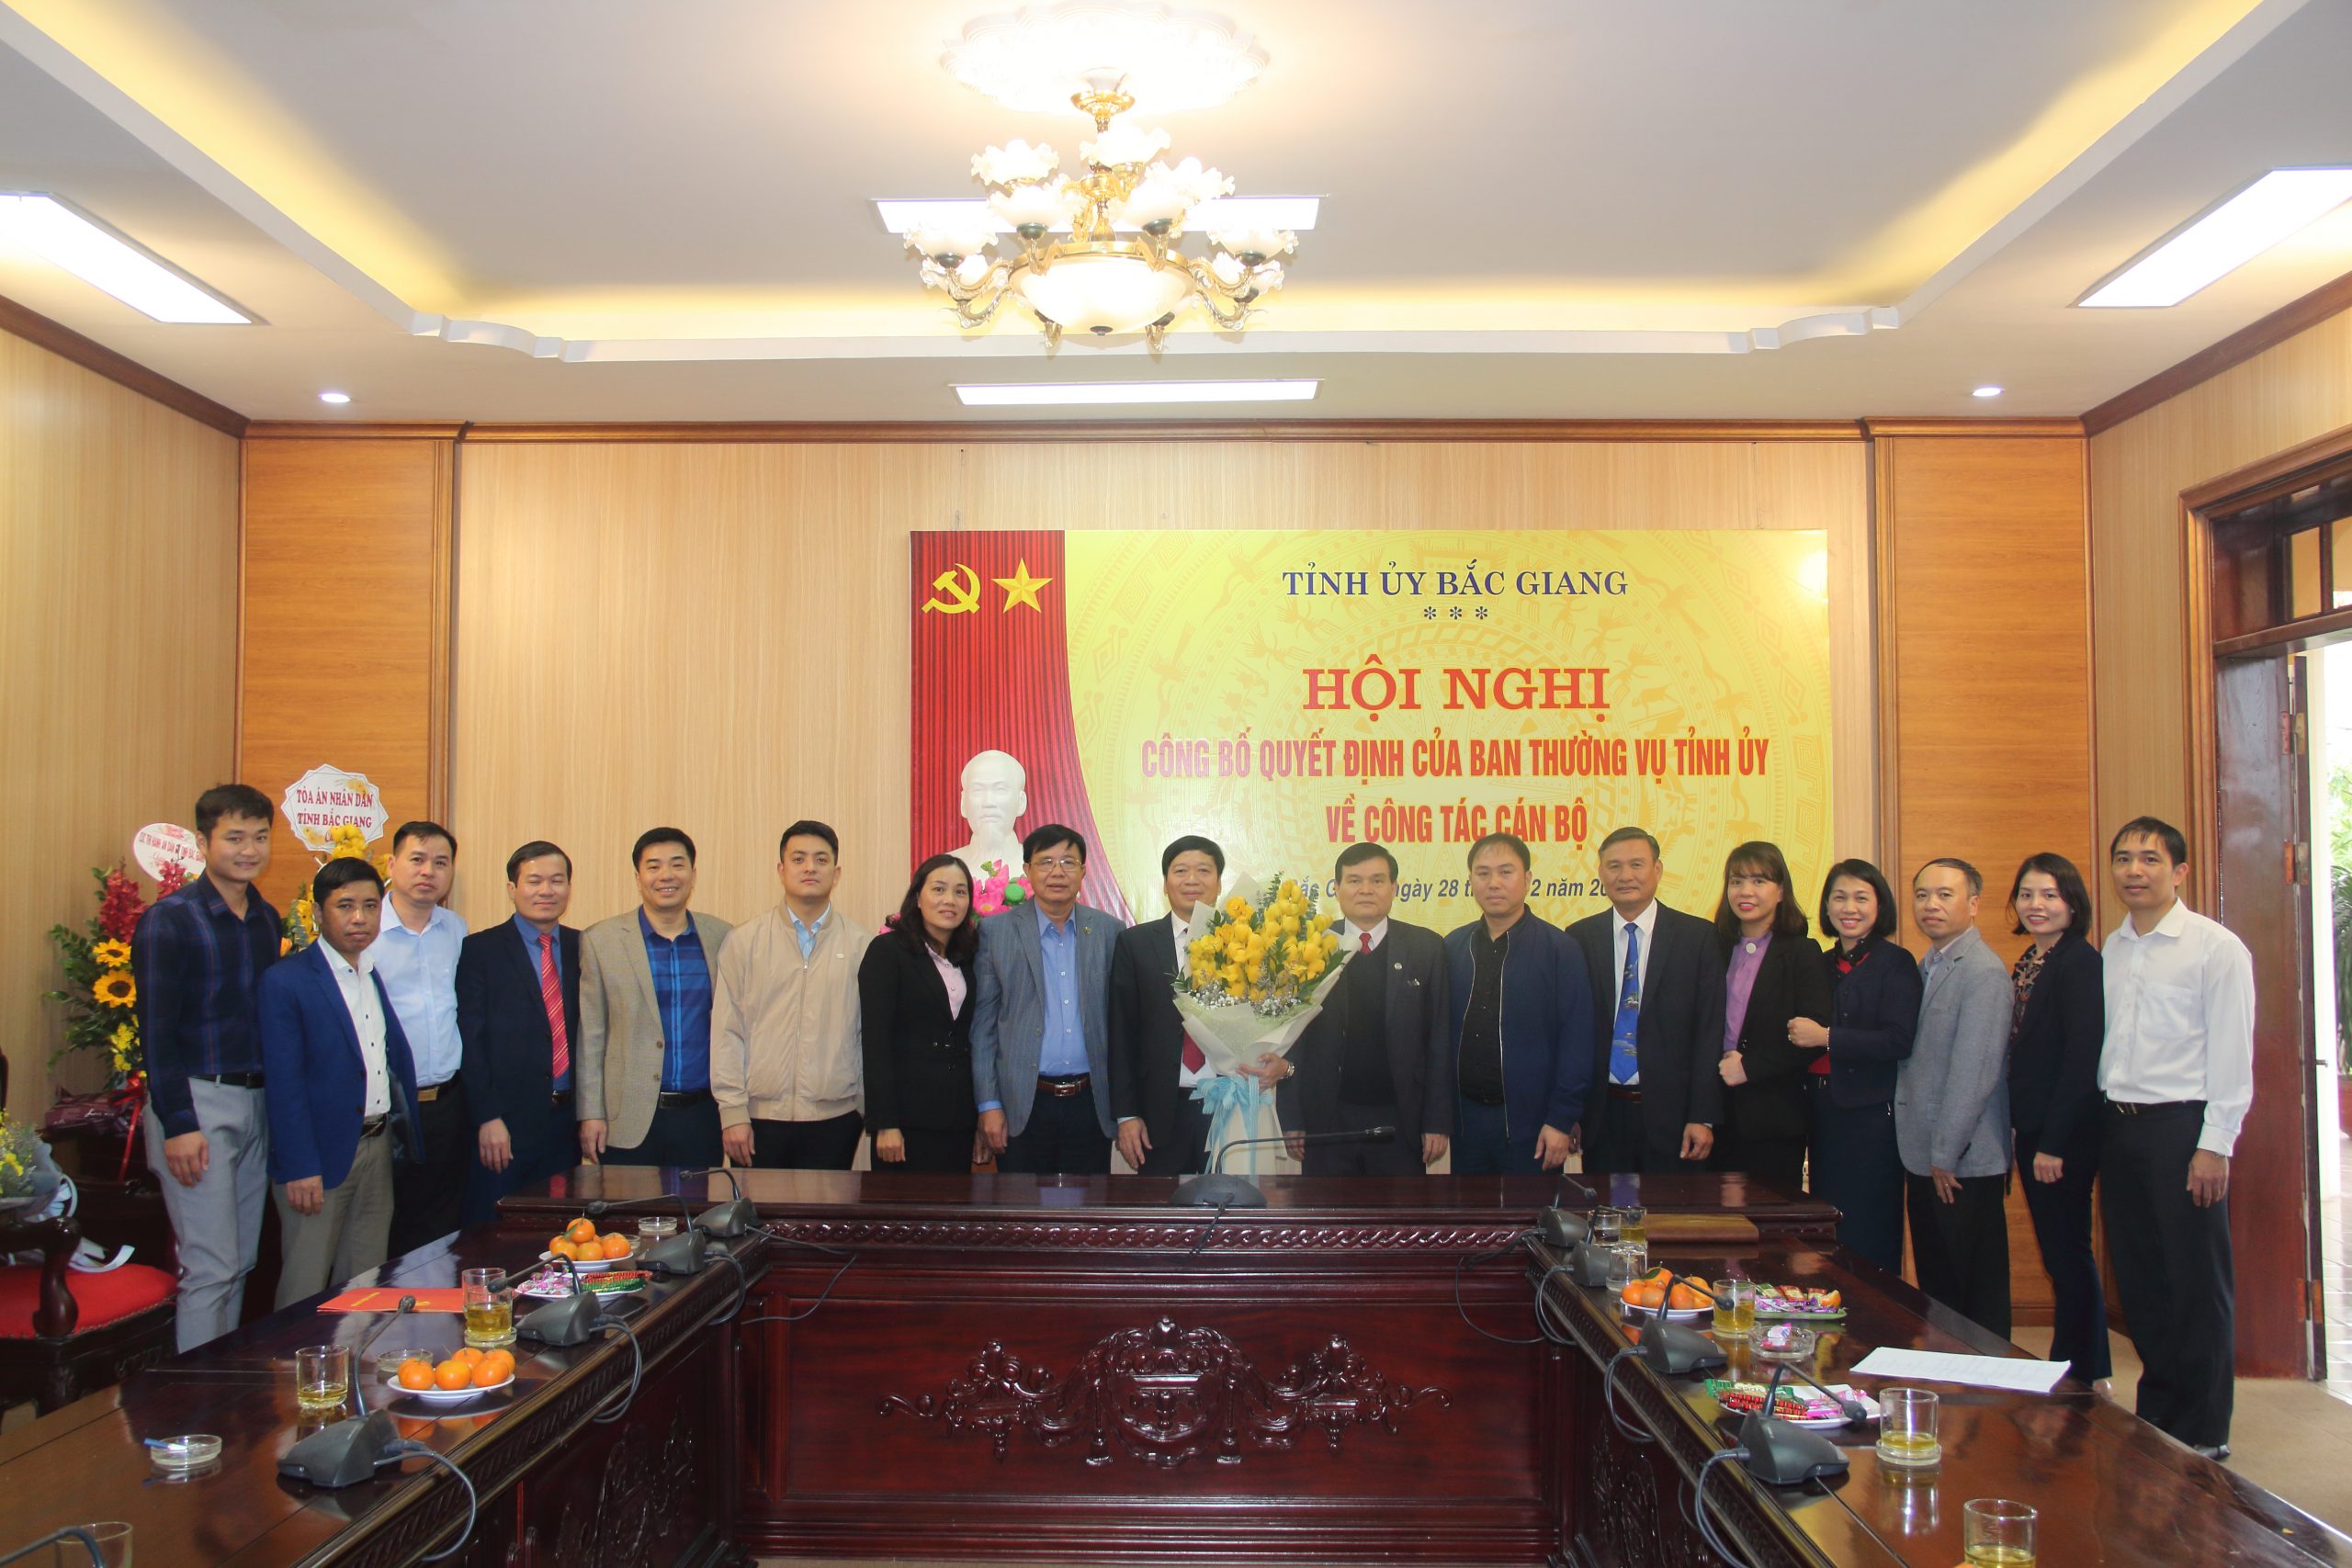 Chương trình công tác tháng 1/2021 của Ban Nội chính Tỉnh ủy Bắc Giang